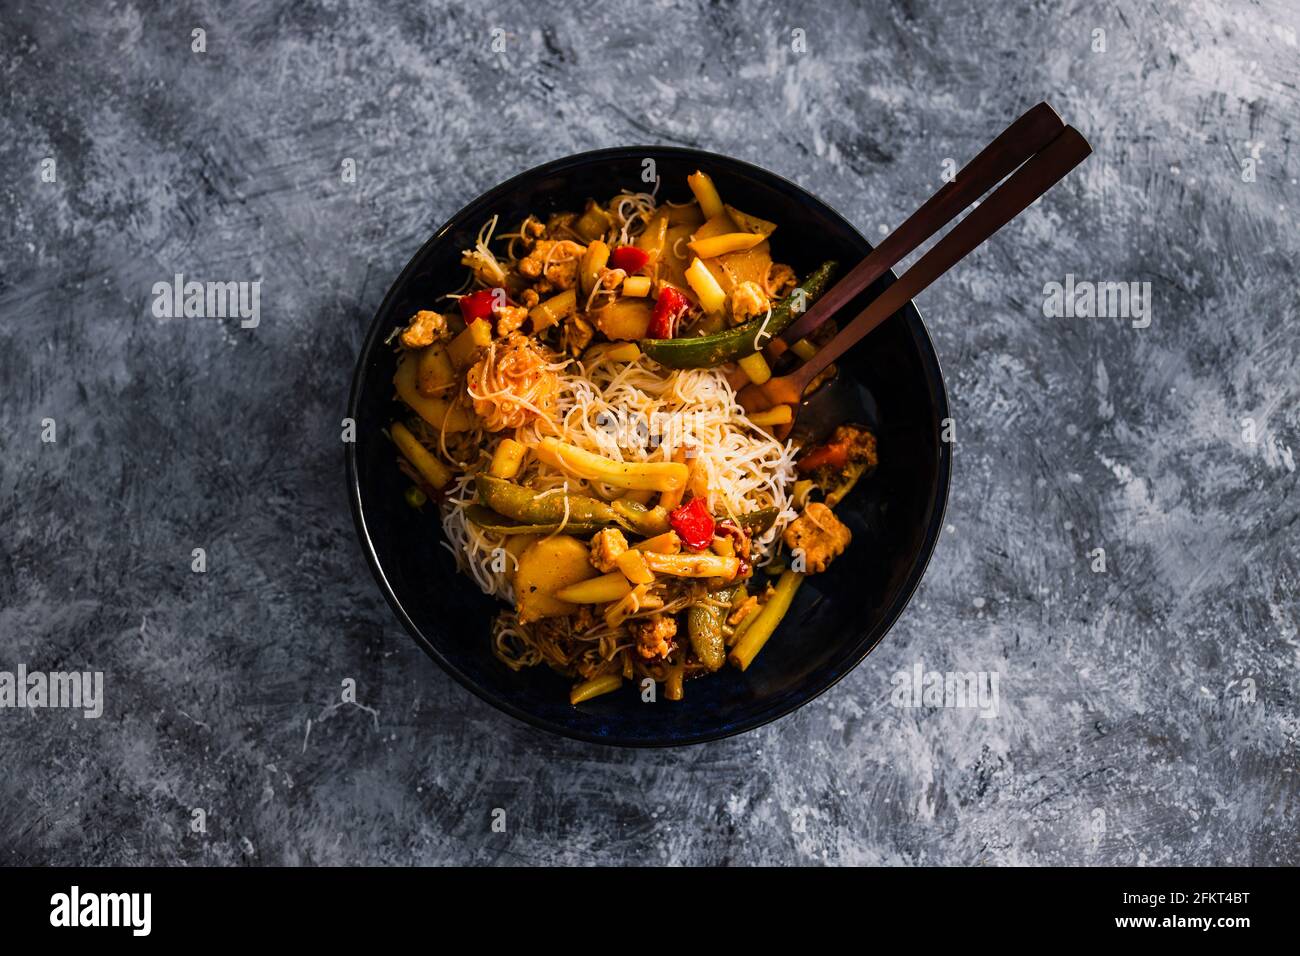 Vegane Pfannengerichte mit gemischtem asiatischem Gemüse und  Vermicelli-Nudeln, gesunde Rezepte auf pflanzlicher Basis Stockfotografie -  Alamy